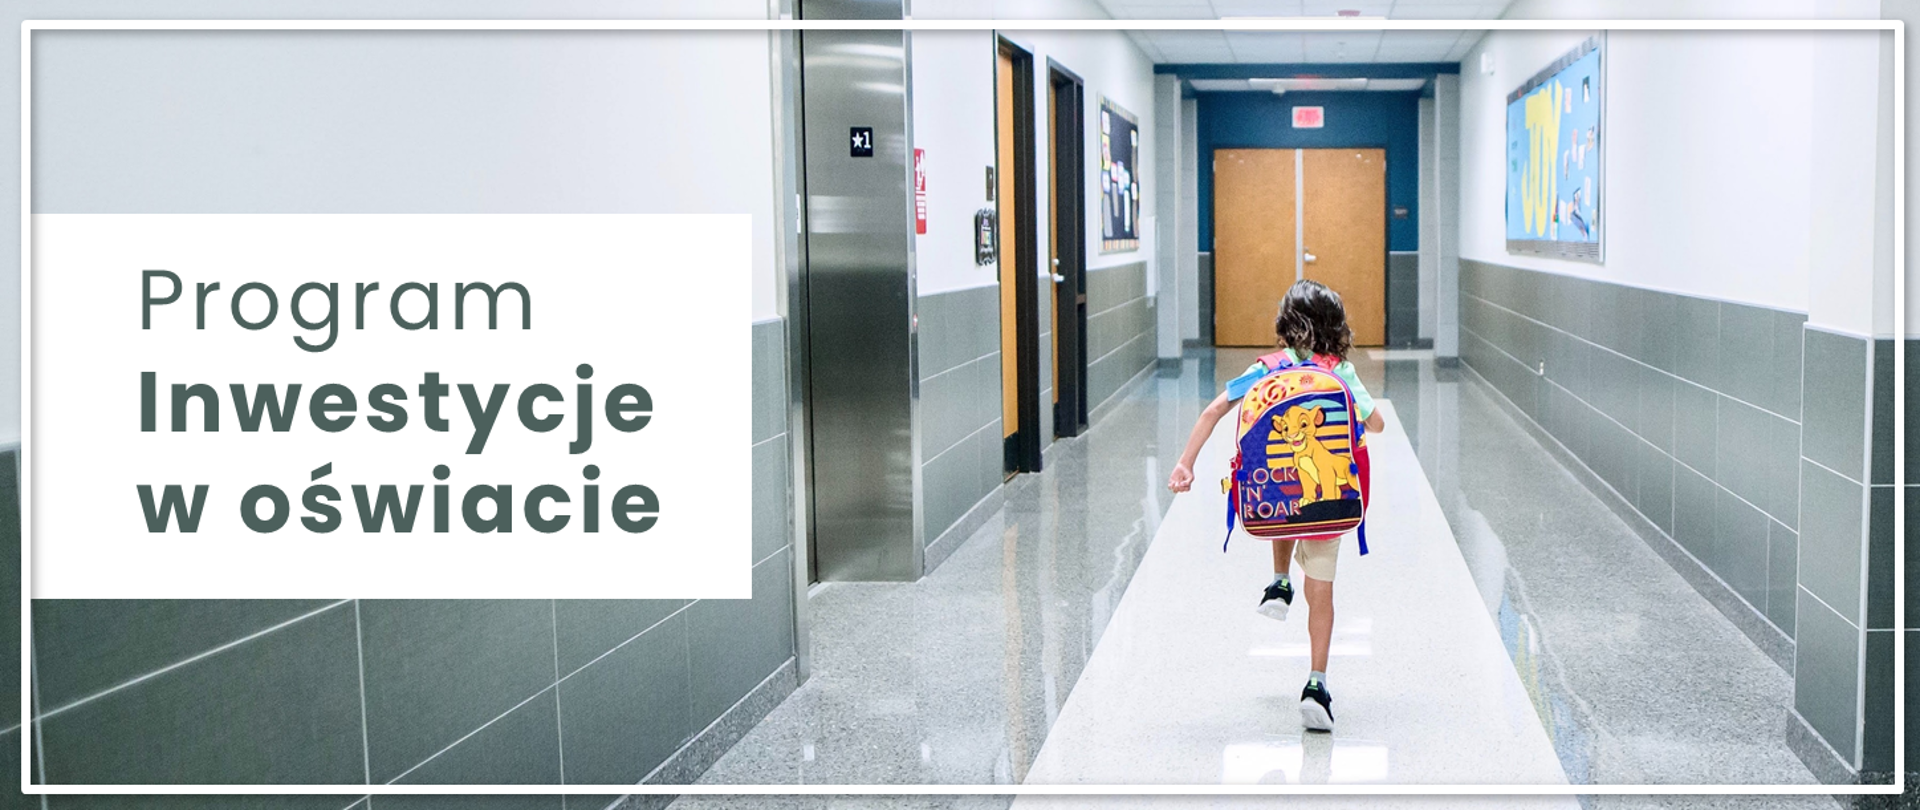 Małe dziecko z tornistrem biegnie po szkolnym korytarzu, obok napis Inwestycje w oświacie.